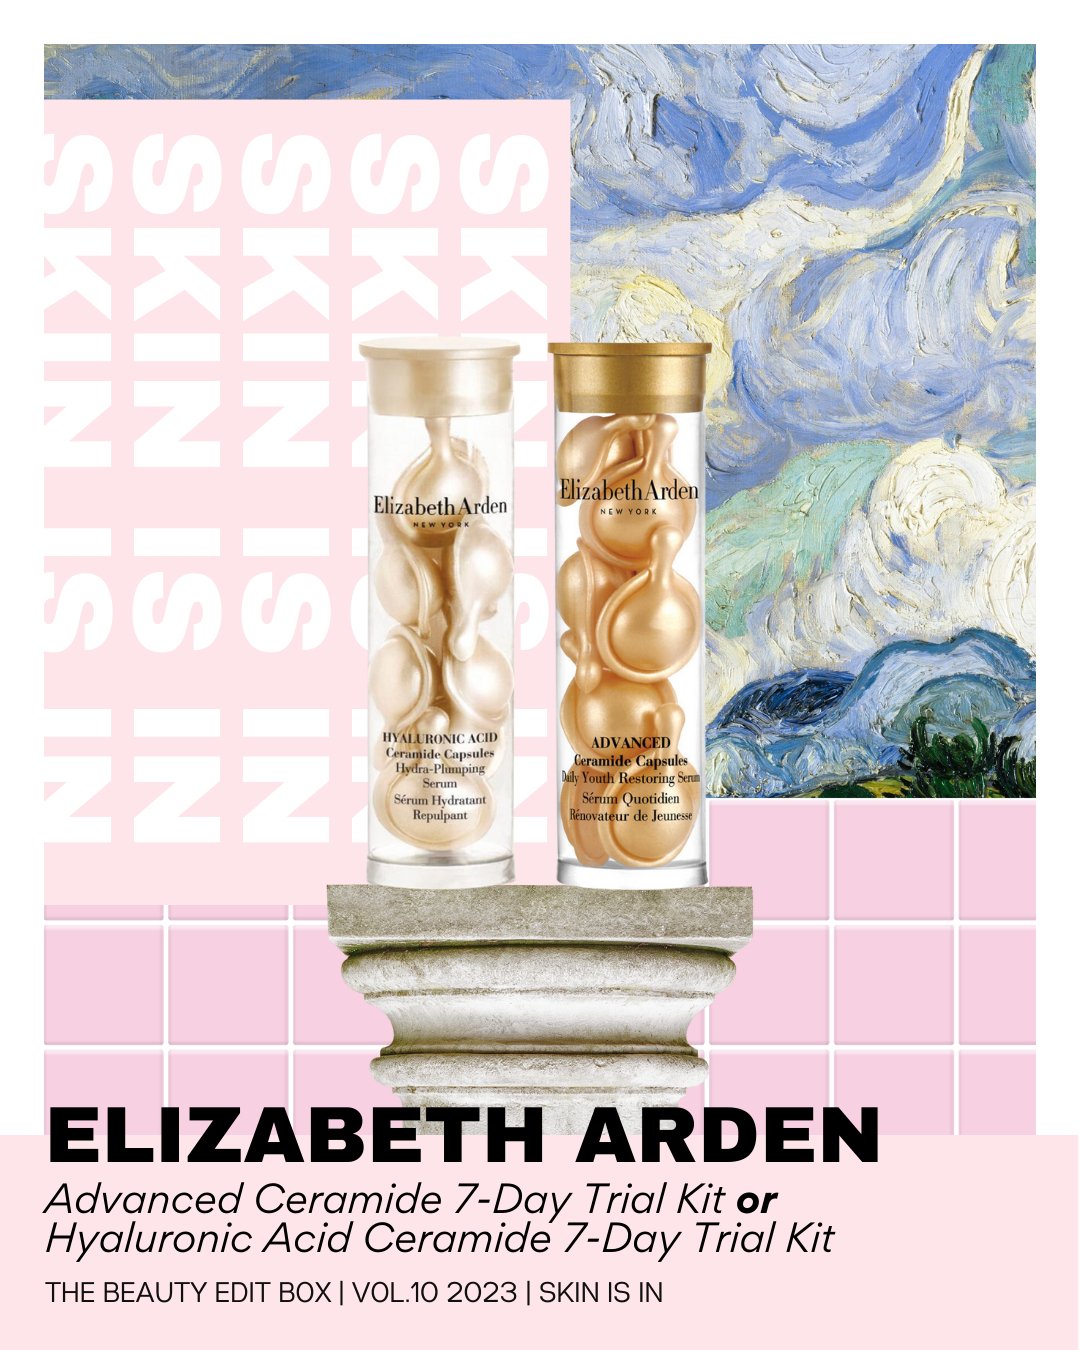 Inside The Beauty Edit Box Vol. 10: Elizabeth Arden